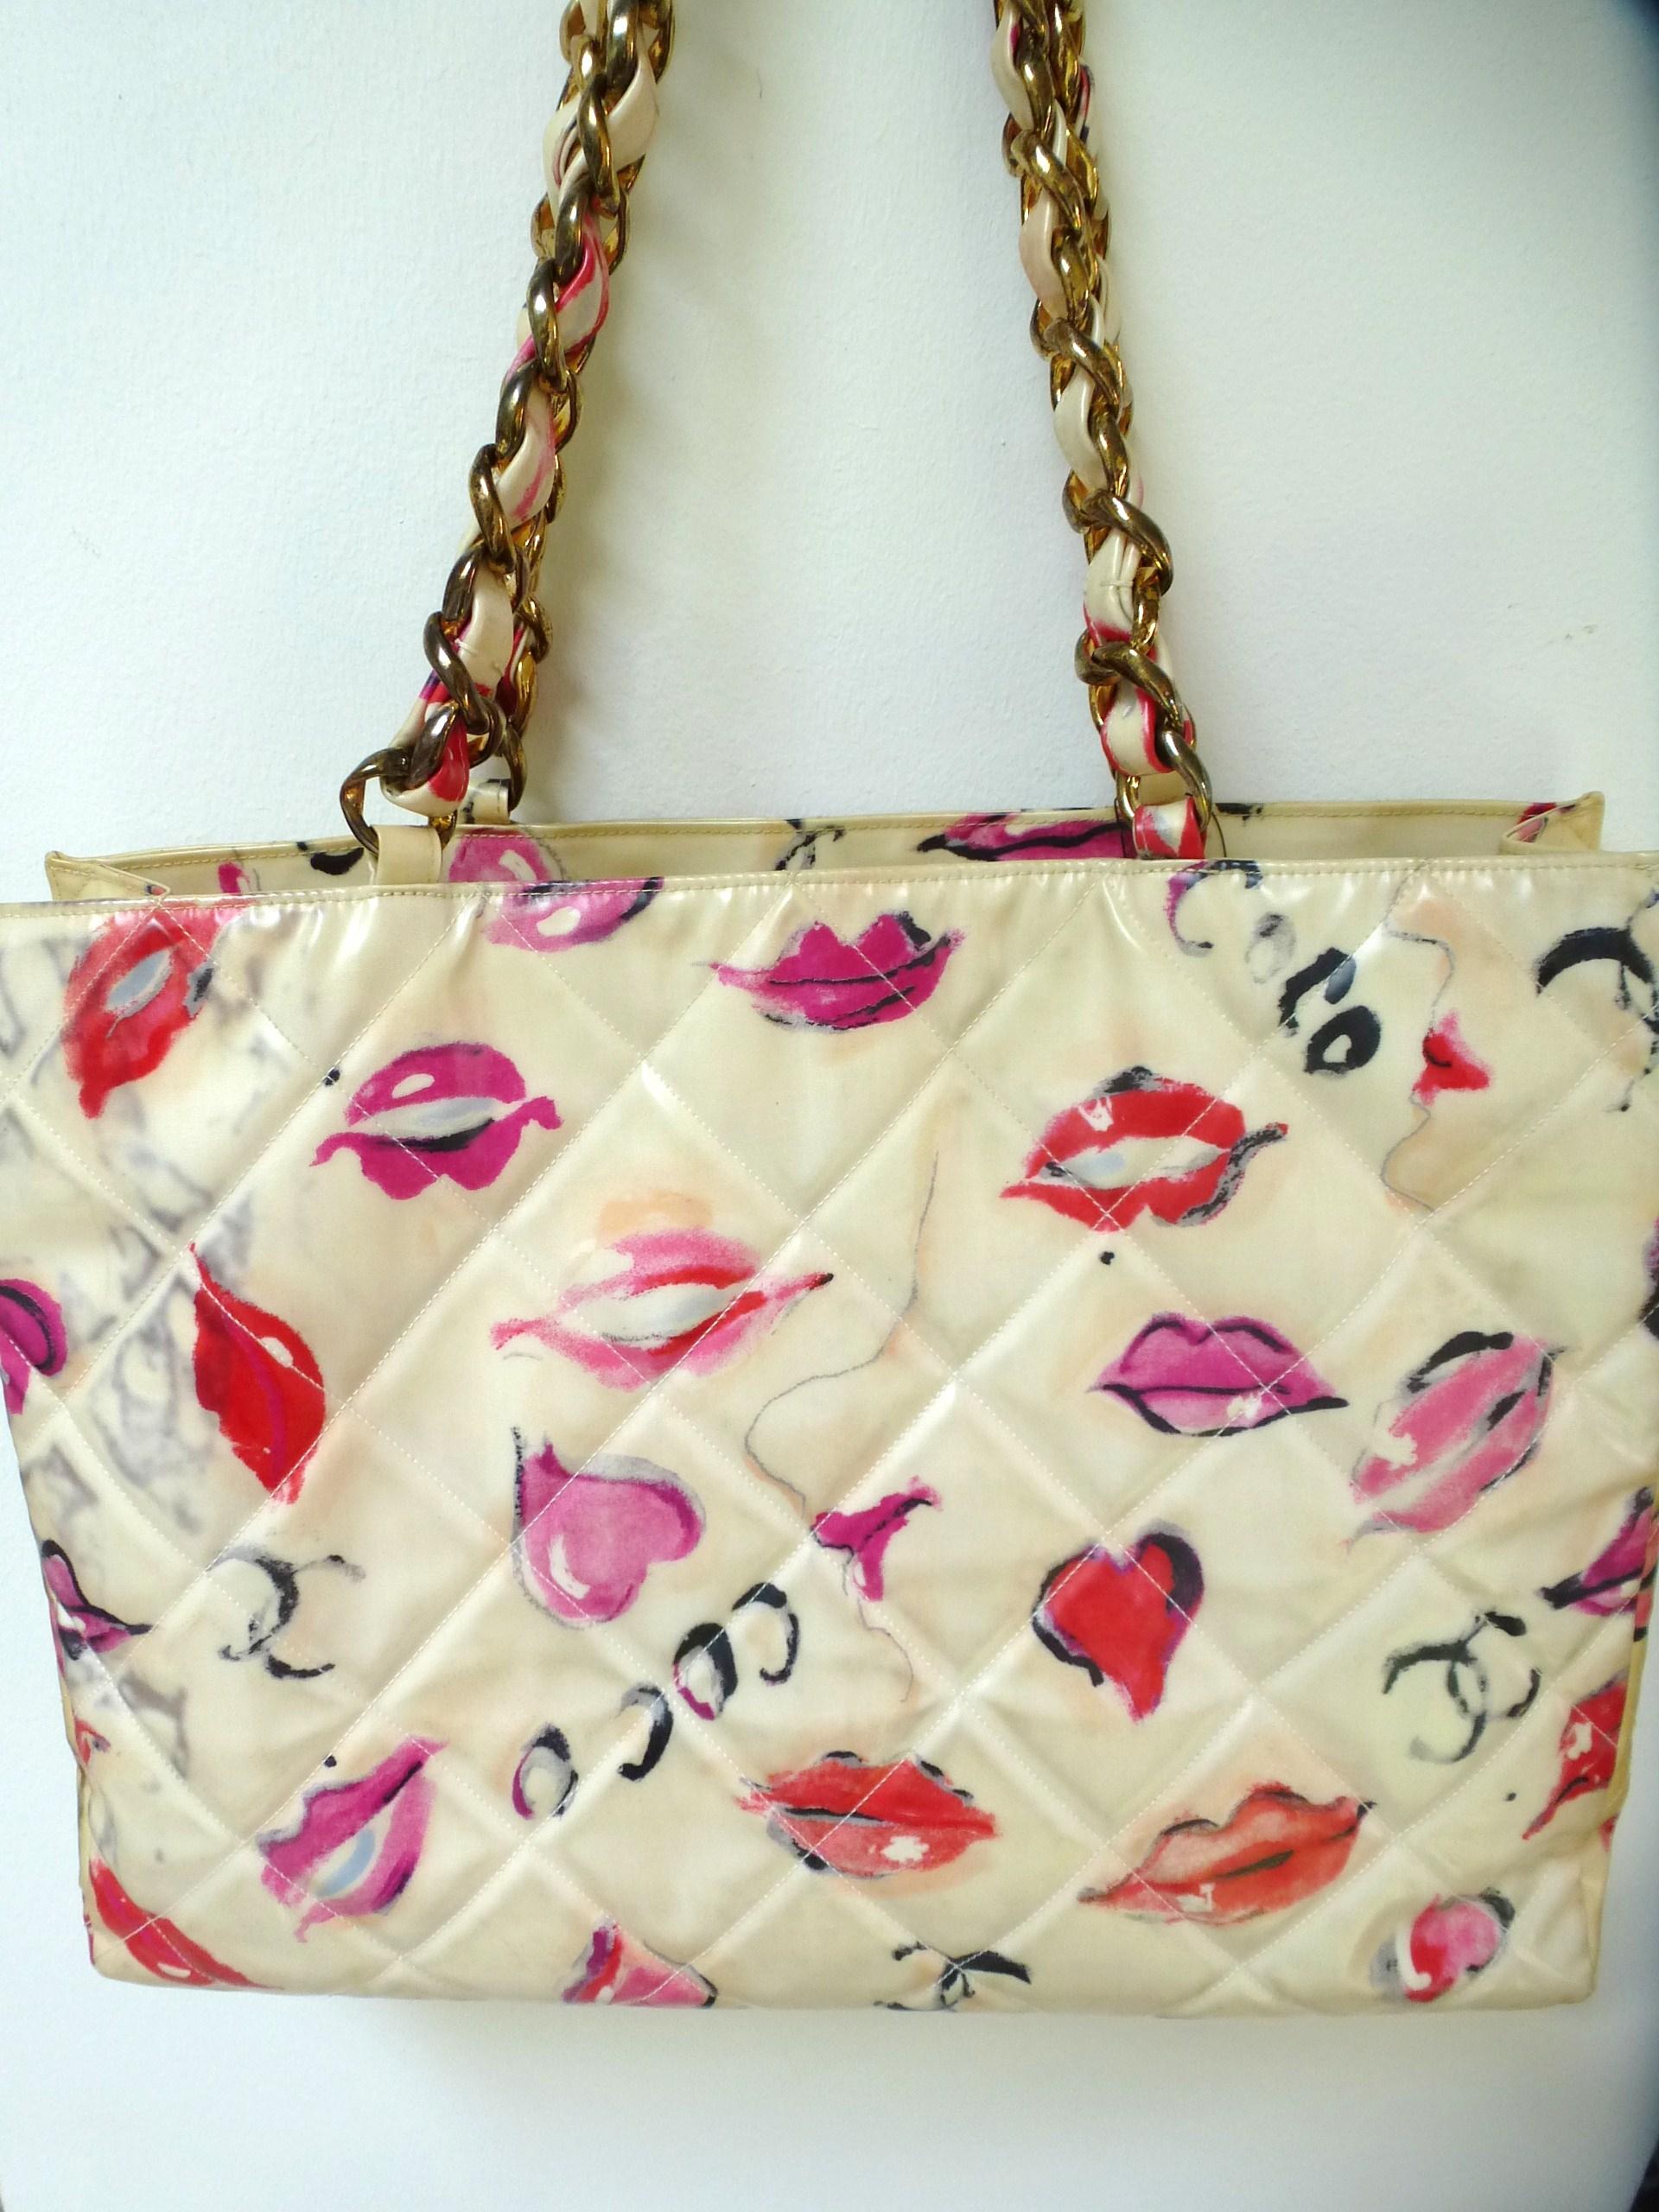 Chanel Jumbo Nylon Shopper Tot bag avec des lèvres, des coeurs, des graffitis de Coco et de CC sur tout le sac. Le devant est matelassé avec de grands CC. L'intérieur du sac est rempli d'un tissu de couleur claire et comporte deux compartiments sur